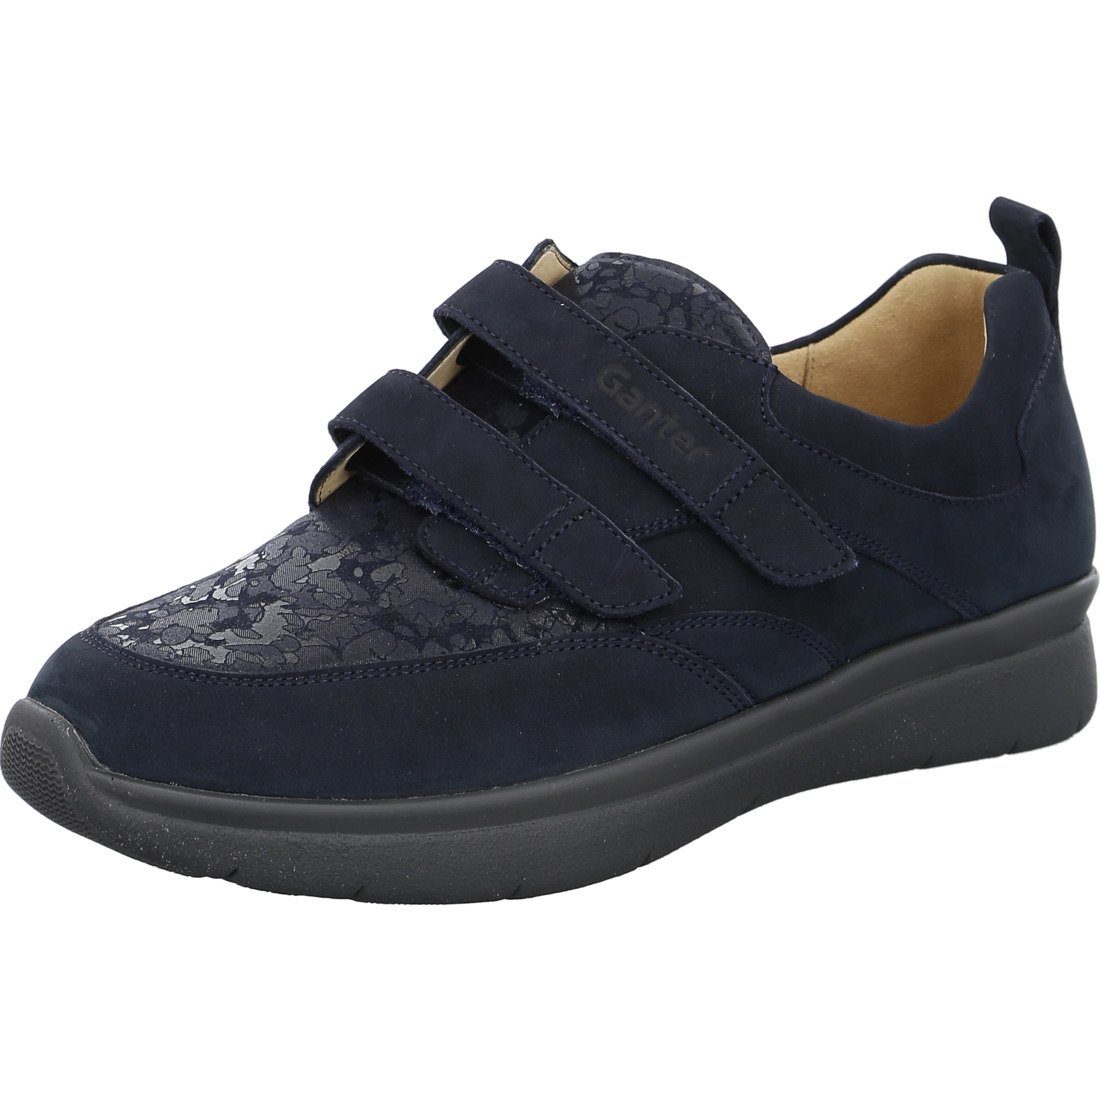 Ganter Ganter Schuhe, Slipper Kira - Leder Damen Slipper blau 050509